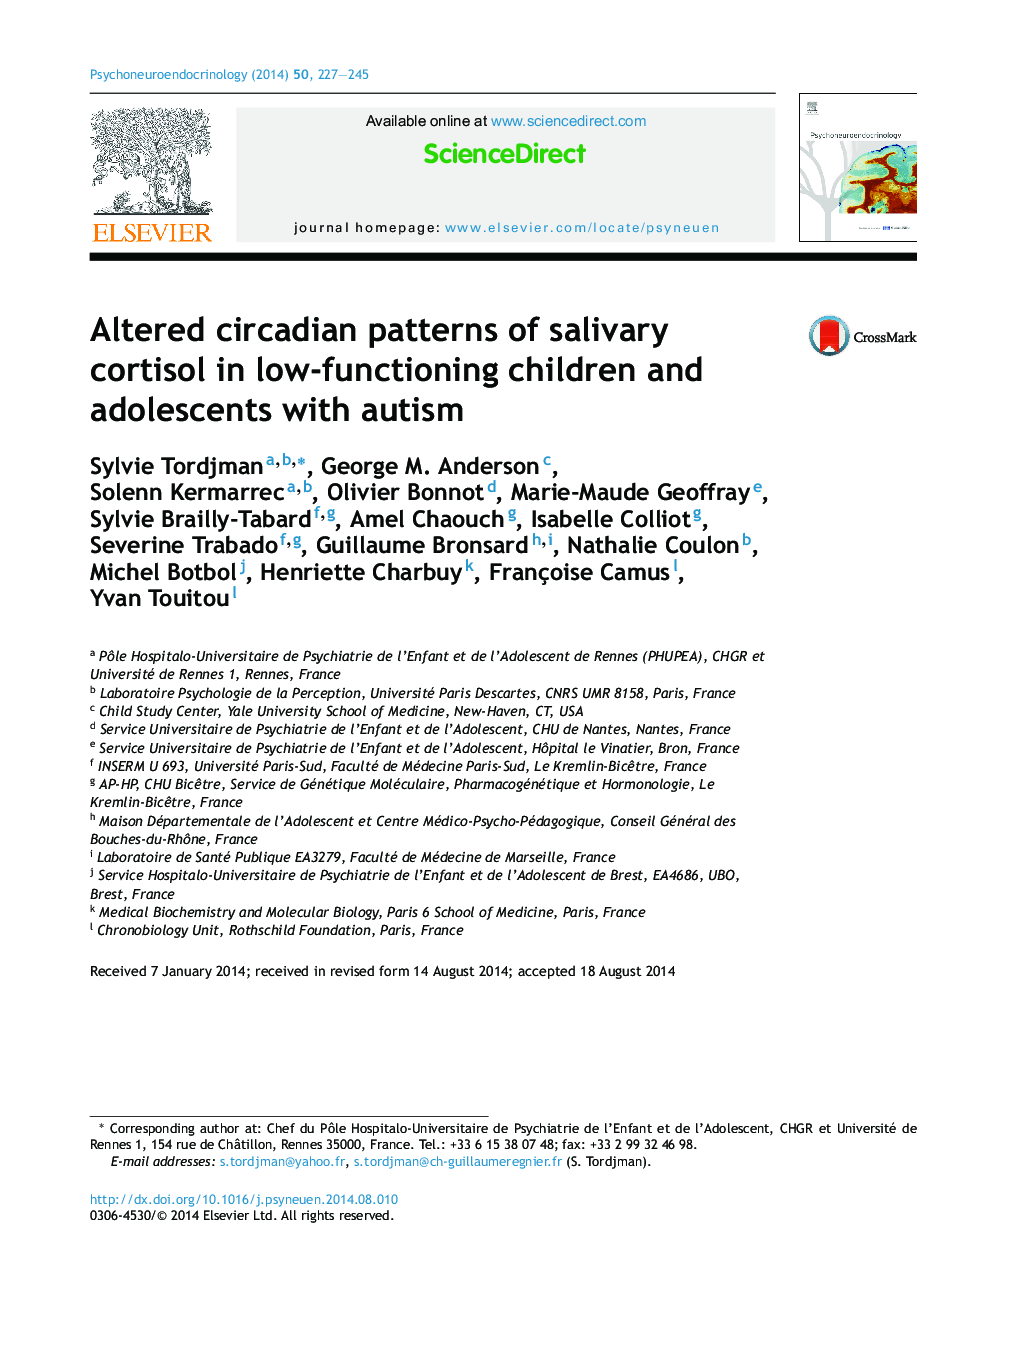 الگوهای کریستالیدی تغییر یافته کورتیزول بزاق در کودکان و نوجوانان مبتلا به اوتیسم کم کار می کنند 